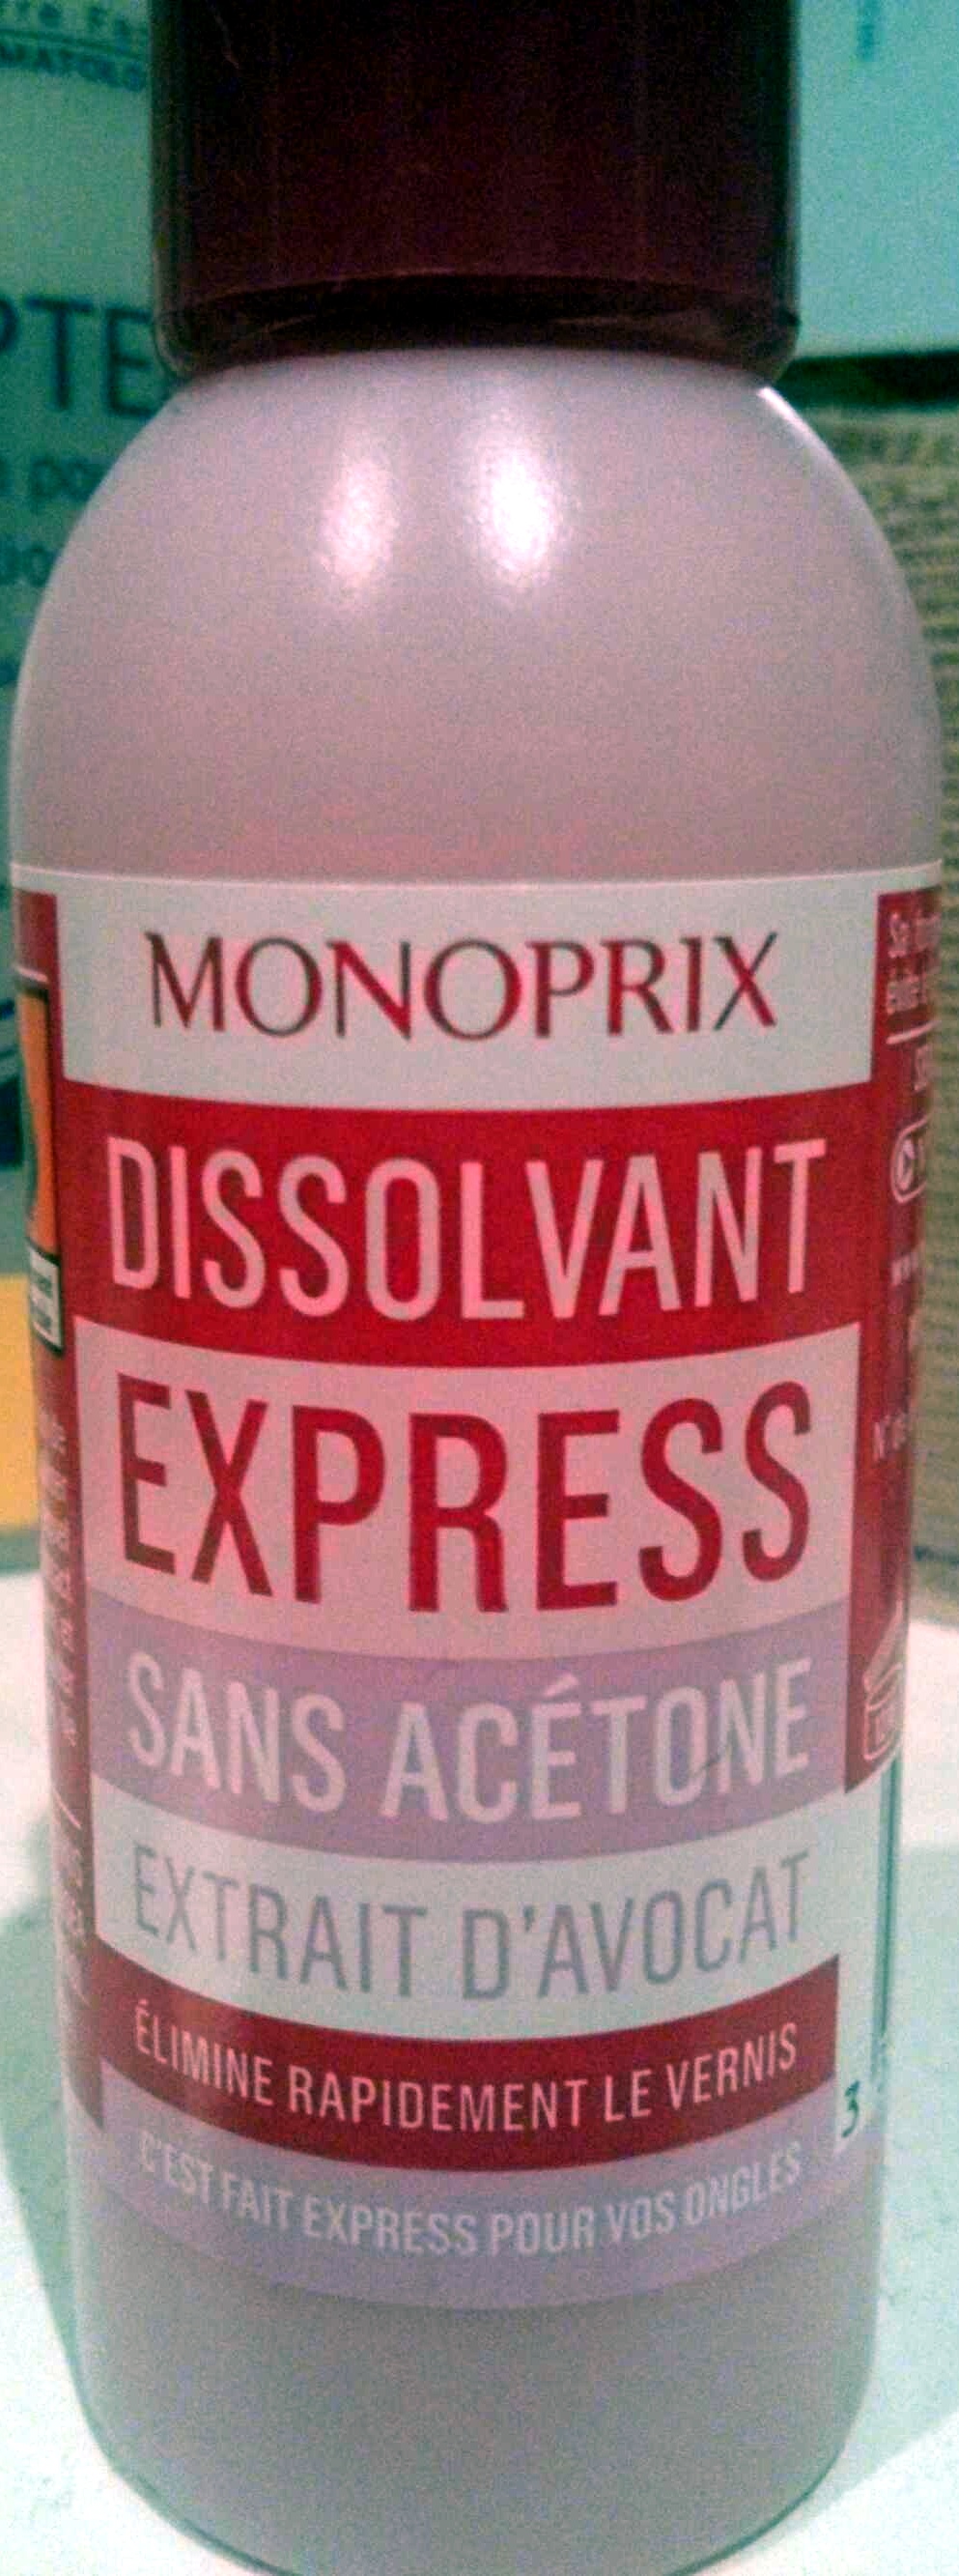 Dissolvant express sans acétone extrait d'avocat - Produto - fr